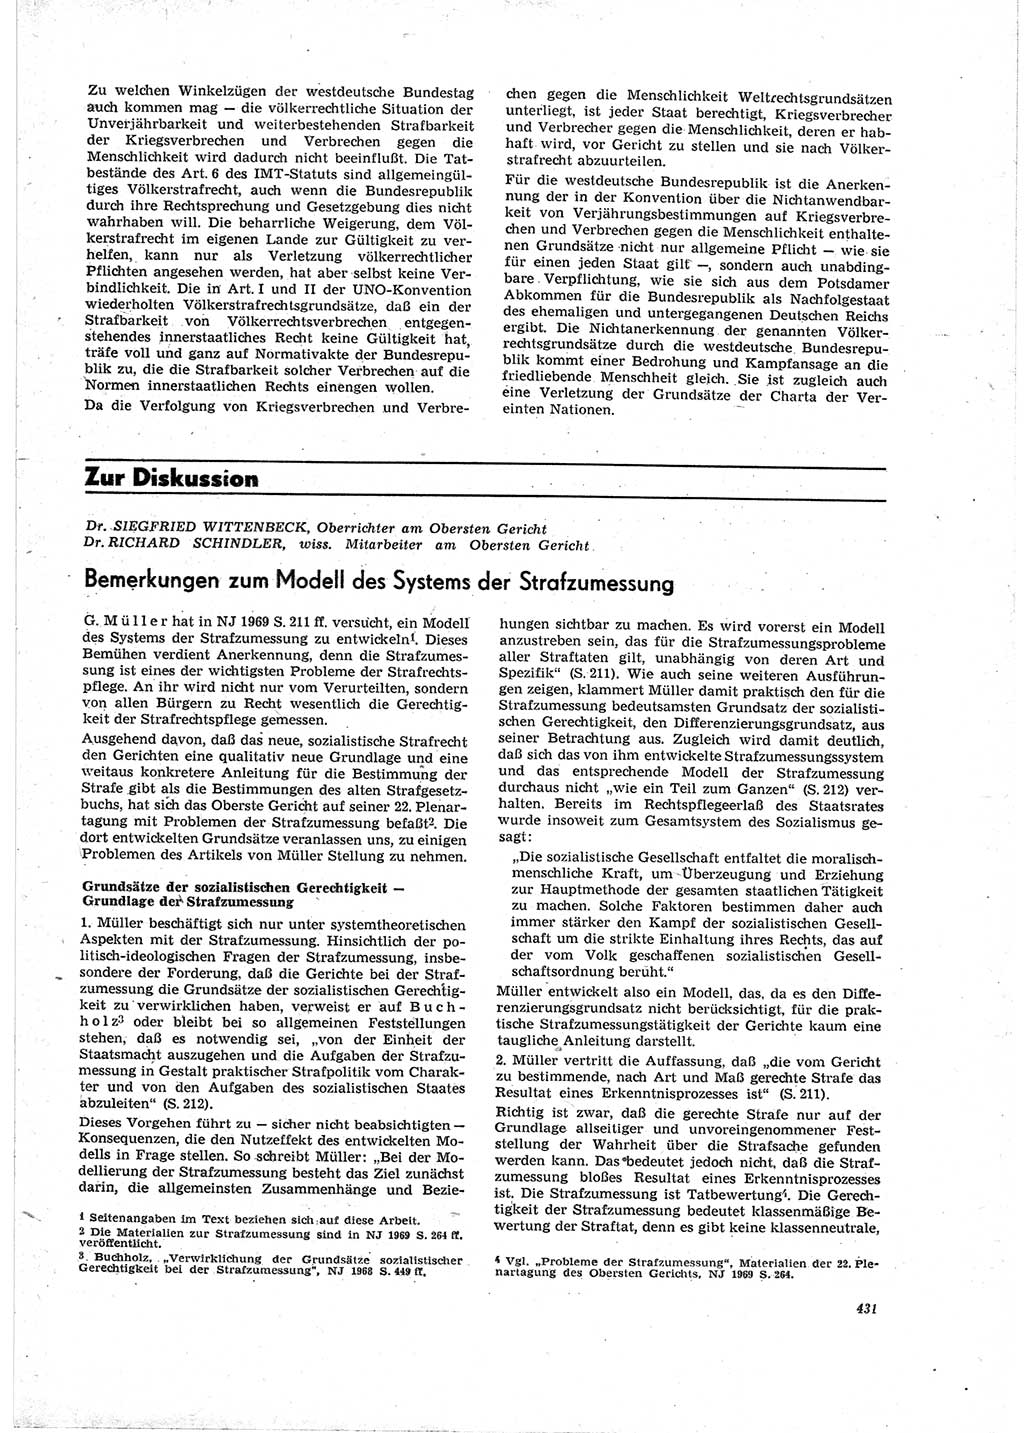 Neue Justiz (NJ), Zeitschrift für Recht und Rechtswissenschaft [Deutsche Demokratische Republik (DDR)], 23. Jahrgang 1969, Seite 431 (NJ DDR 1969, S. 431)